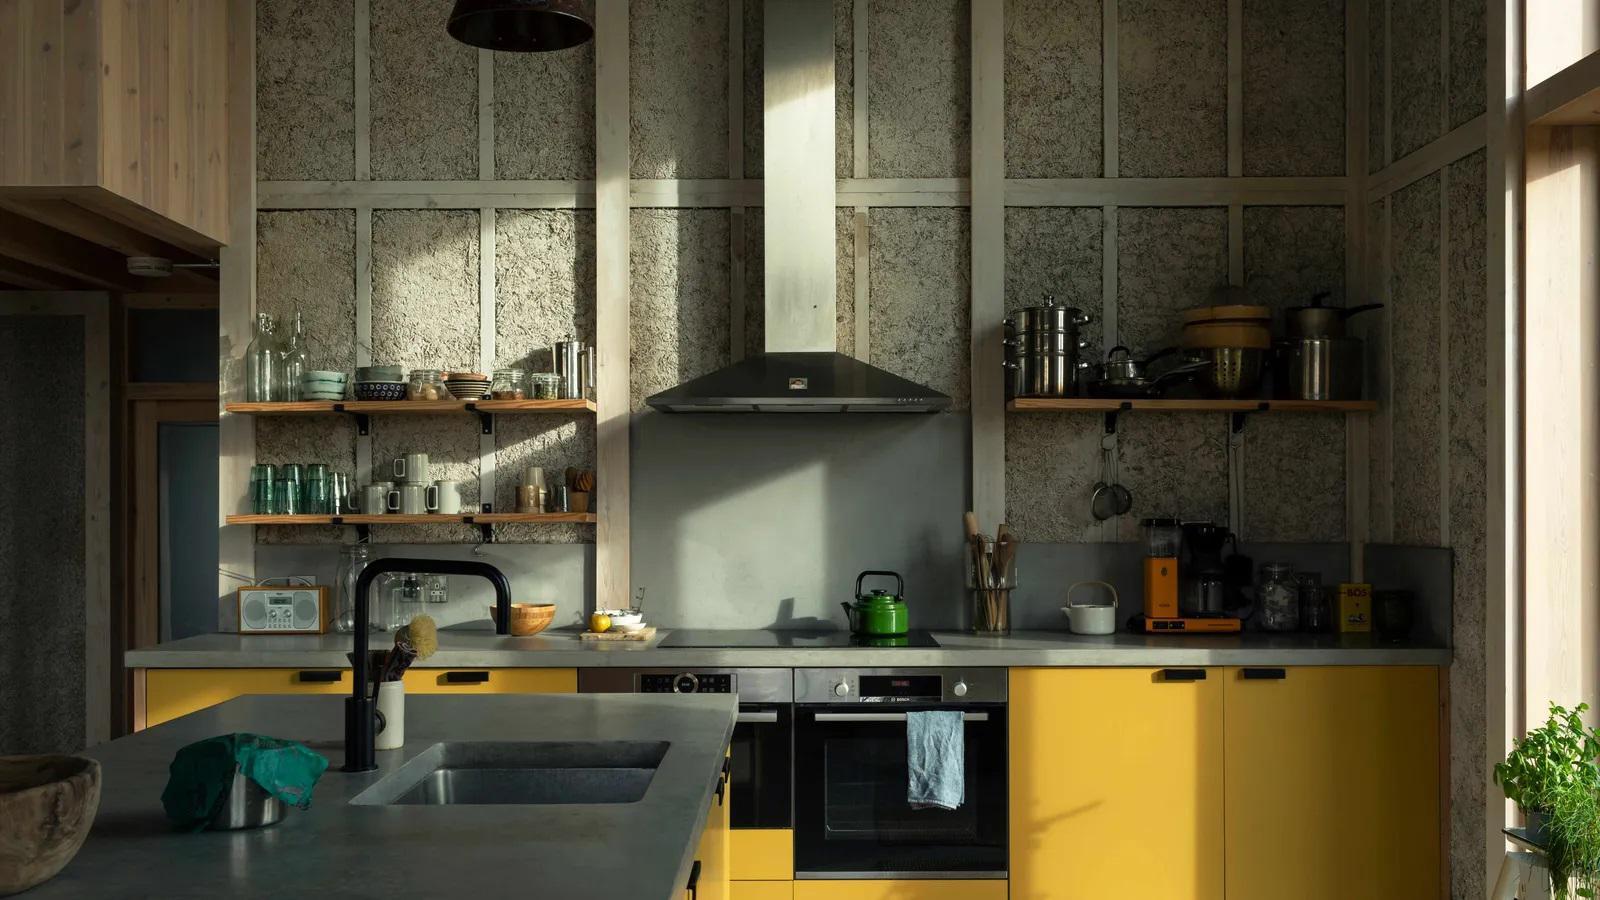 Cozinha com placas de hempcrate visíveis